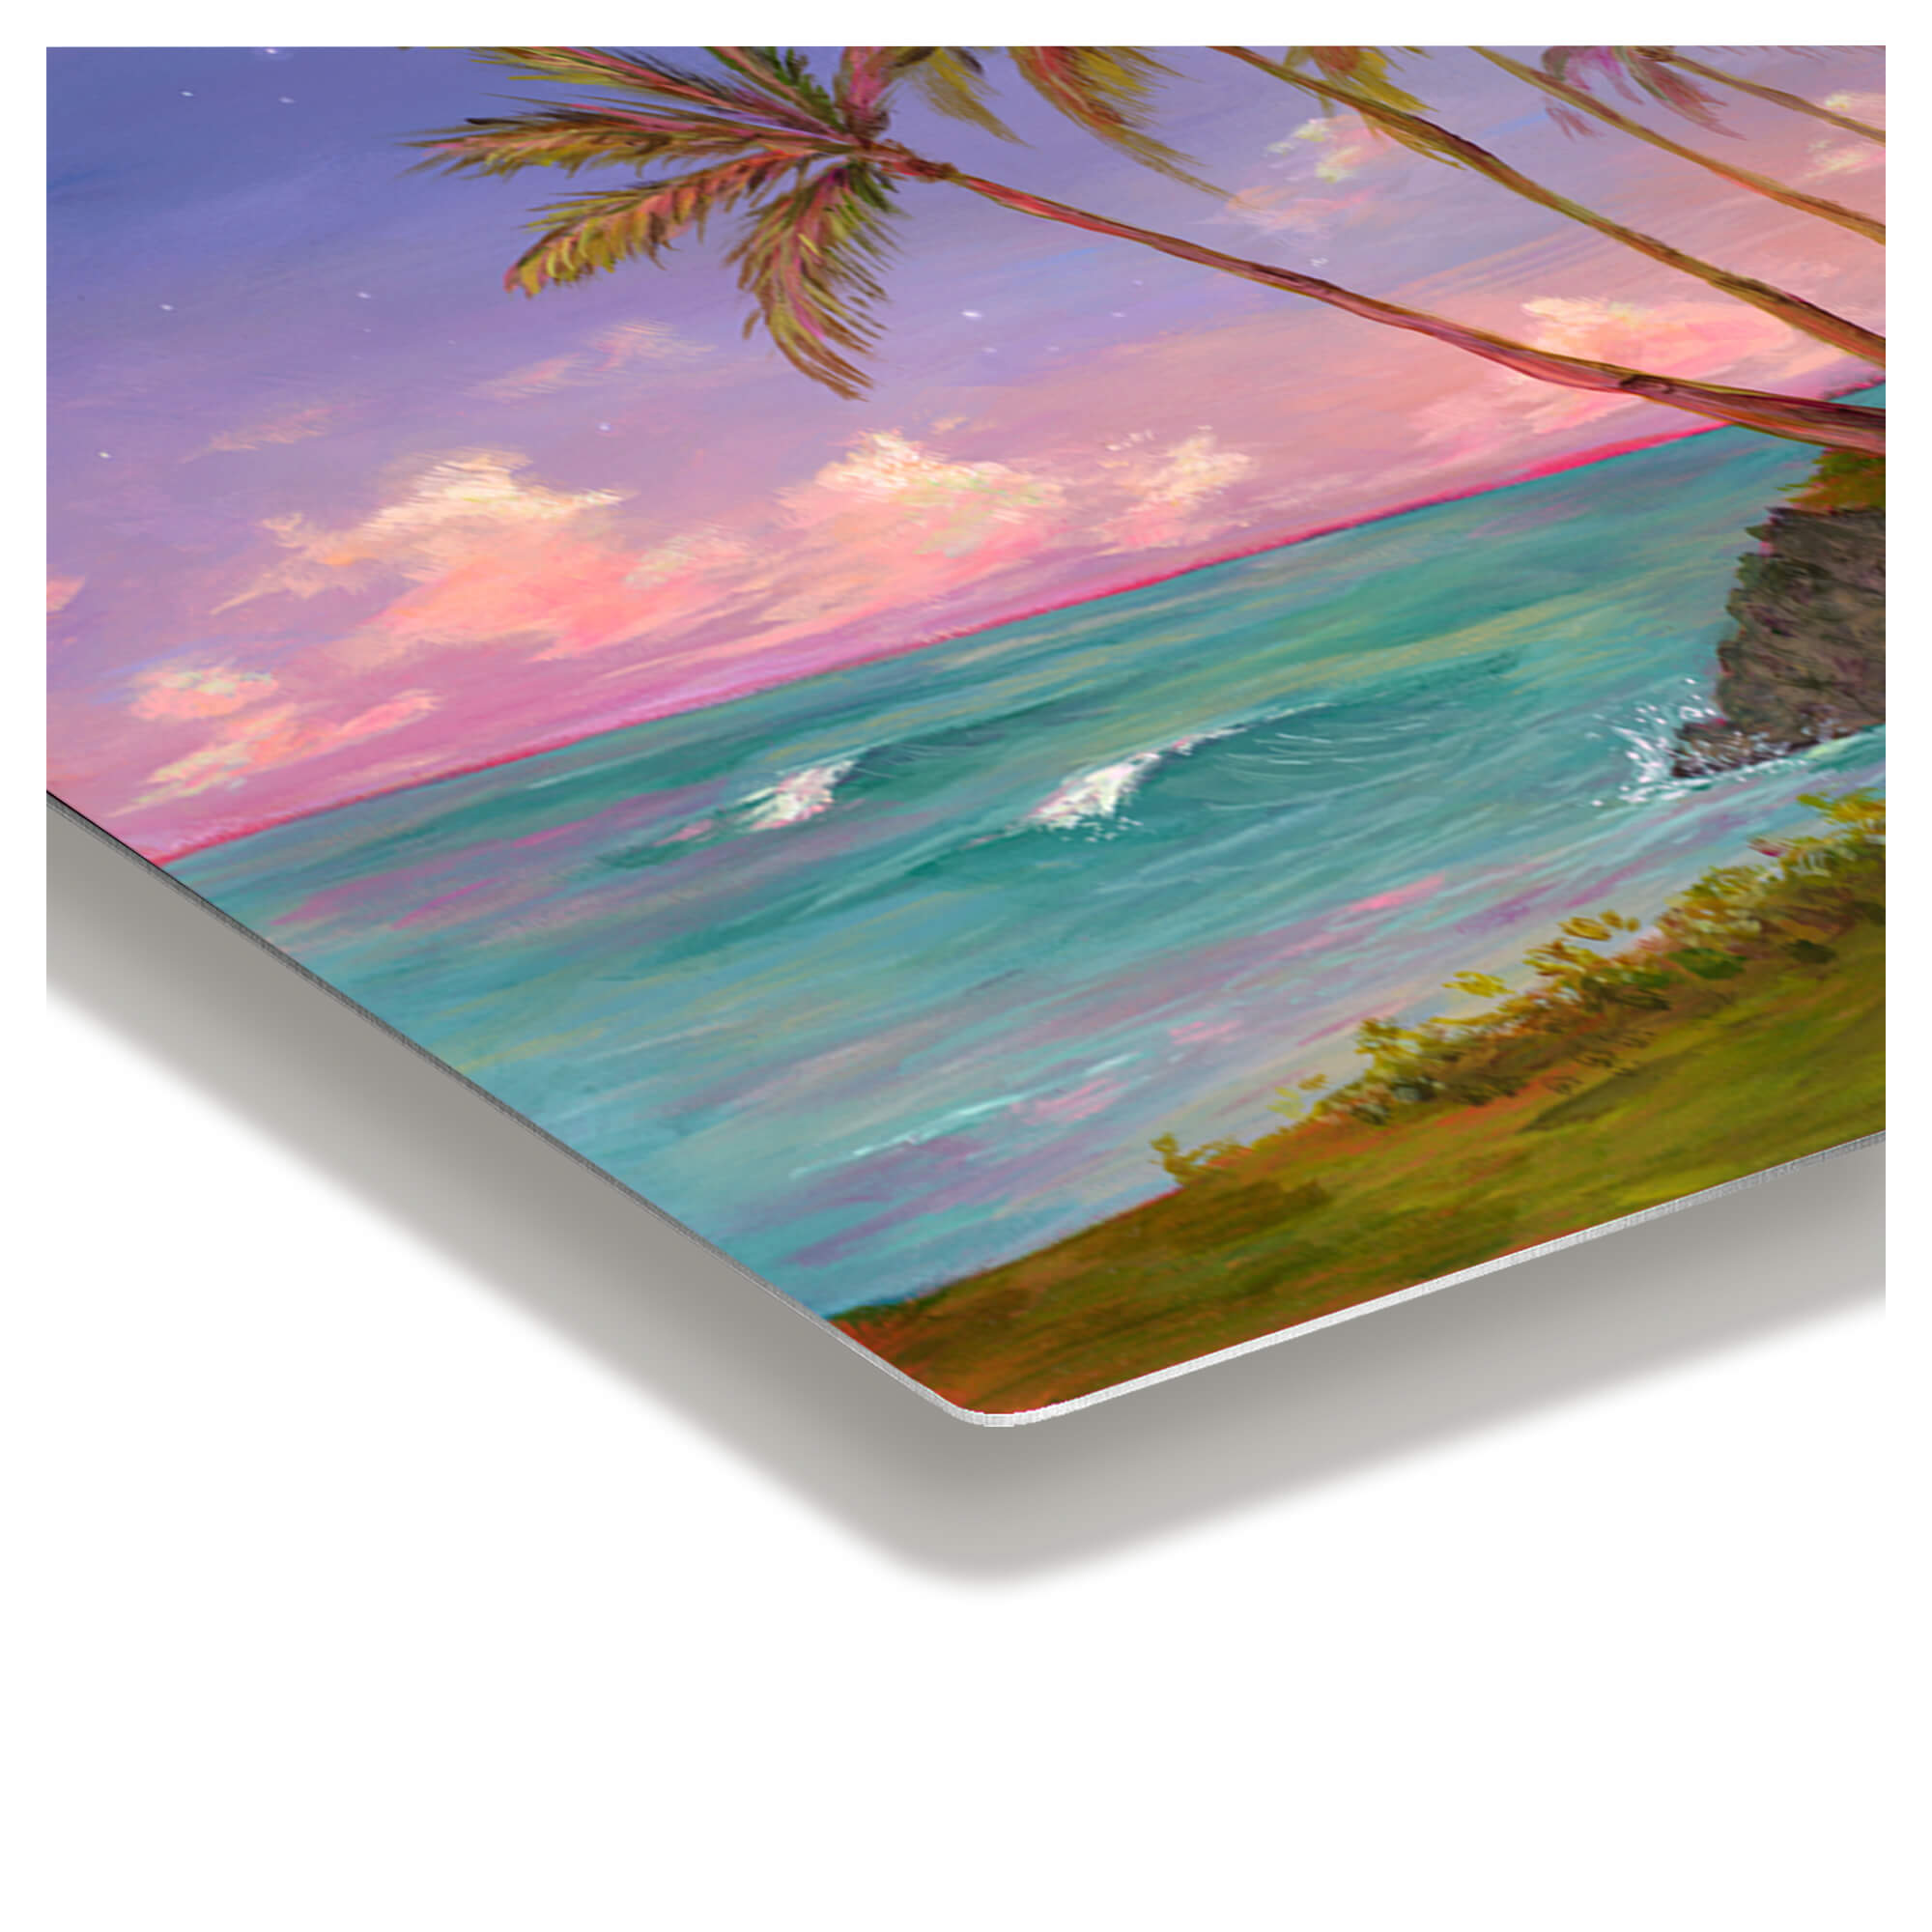 Metal print edge details showing a vibrant teal-hued ocean waters and purple sky by Hawaii artist Lindsay Wilkins